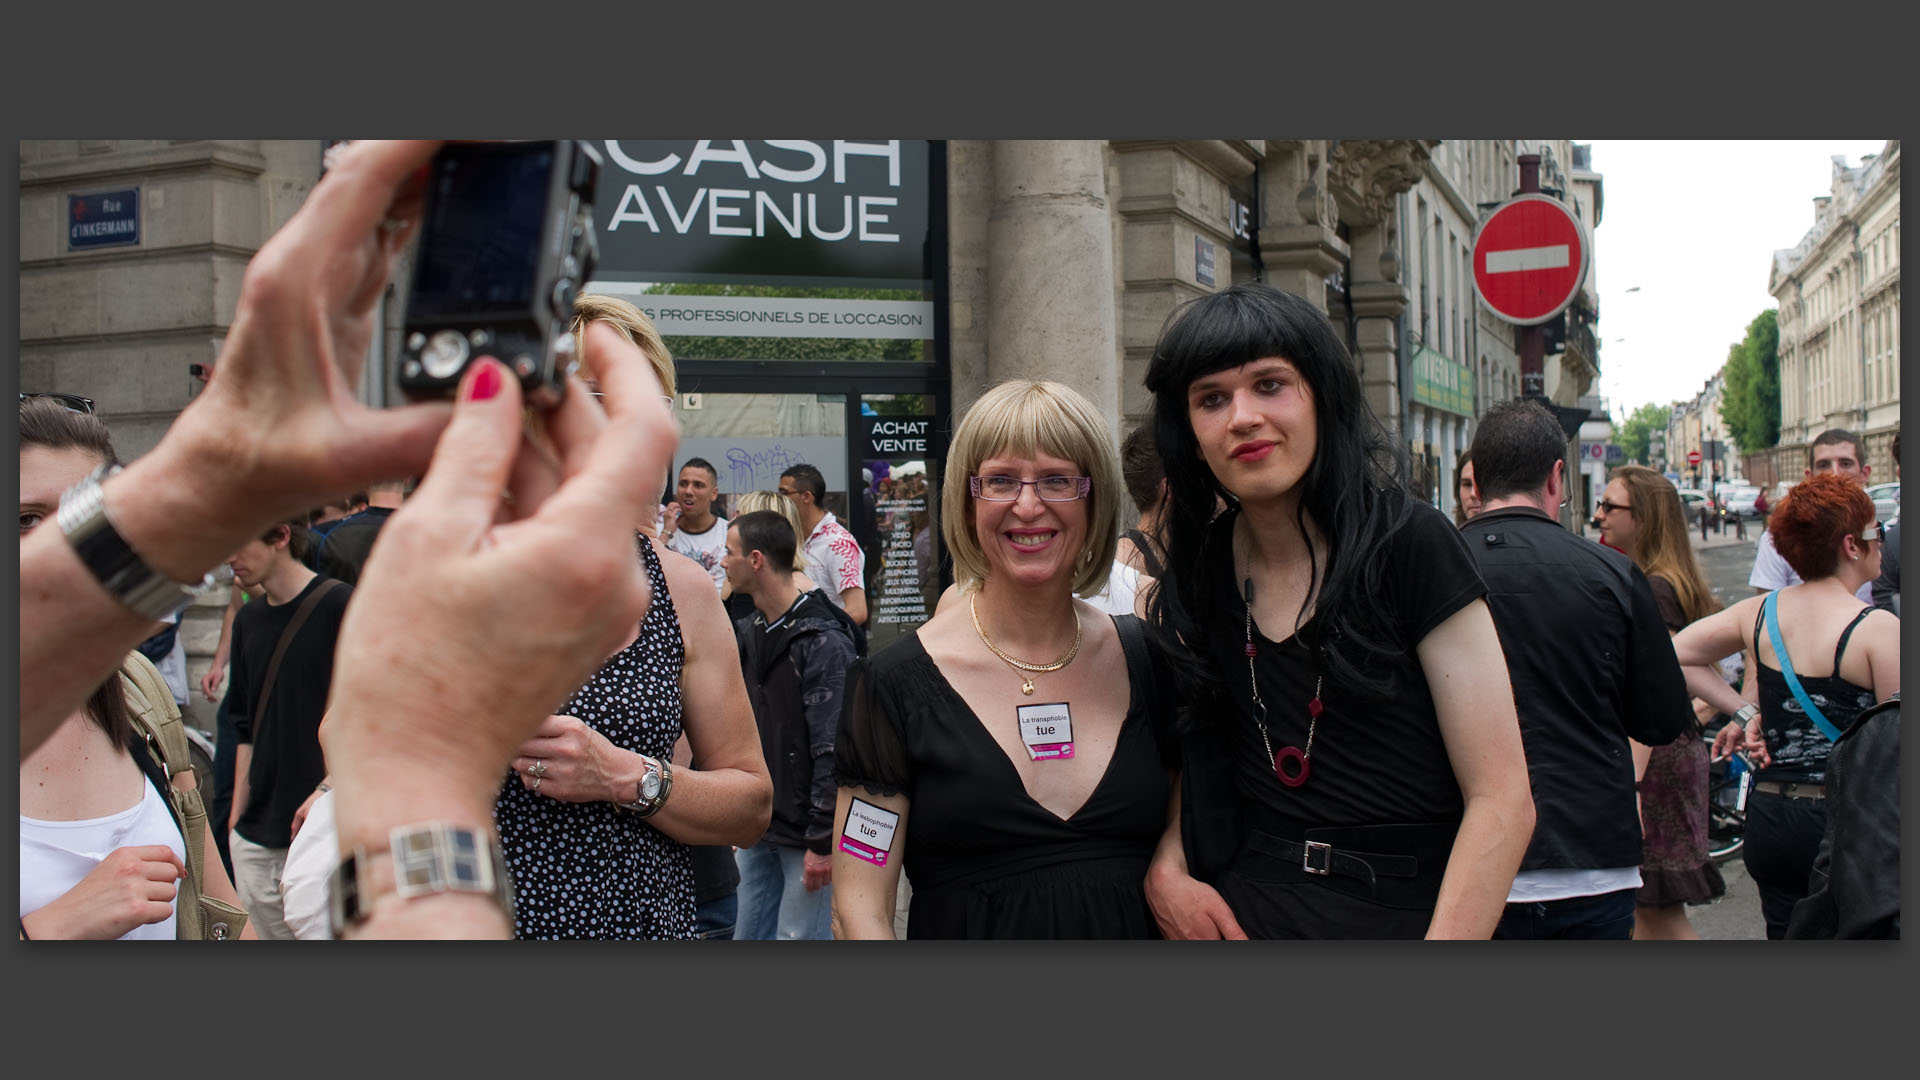 Travestis à la lesbian et gay pride, rue d'Inkermann, à Lille.